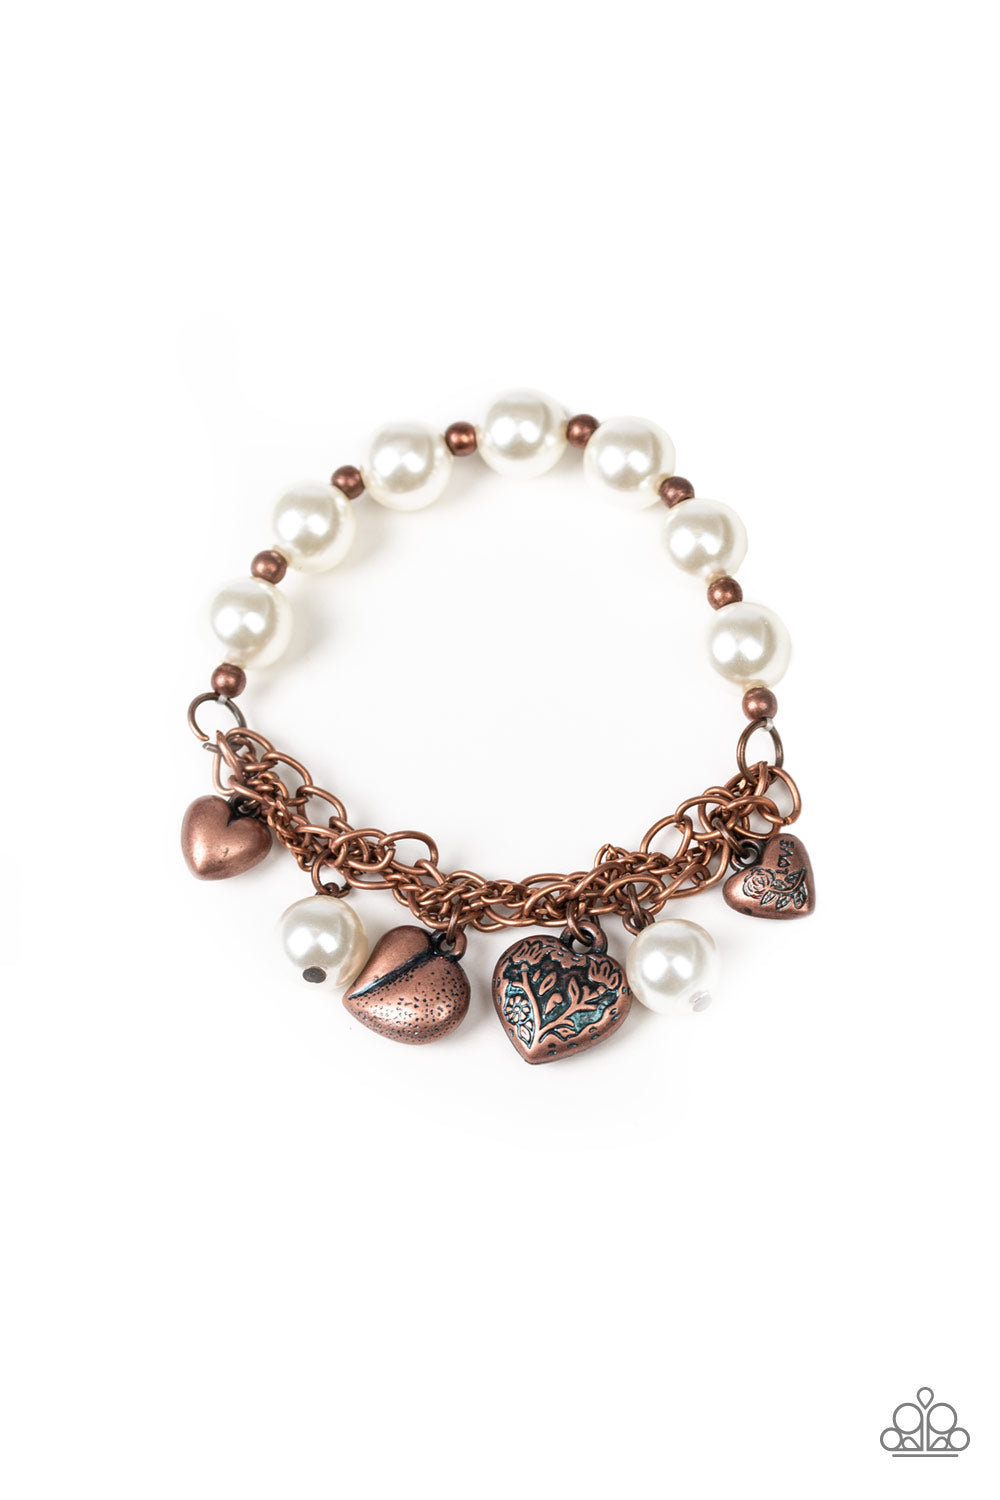 More Amour - Copper Bracelet Paparazzi Accessories - Paparazzi Accessories 